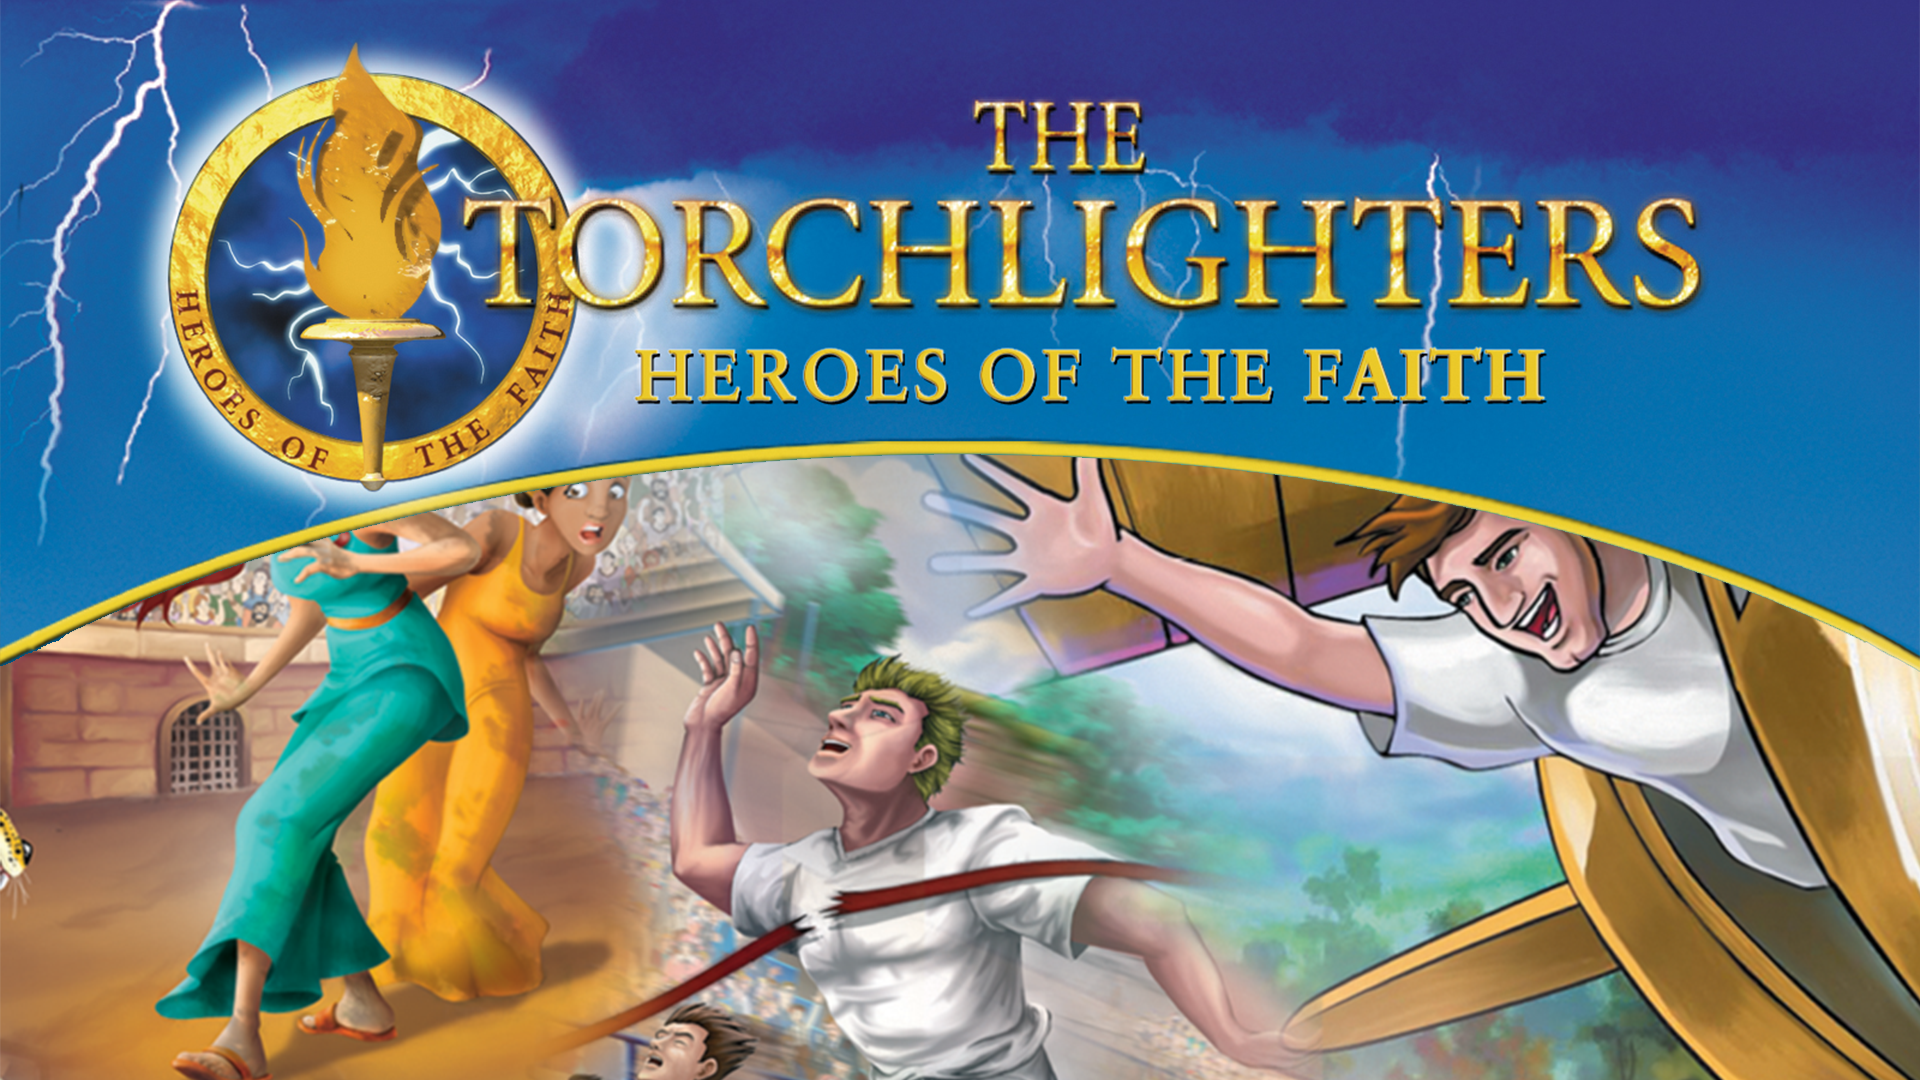 Christian Kids' Shows and Movies | Faithlife TV - Faithlife TV